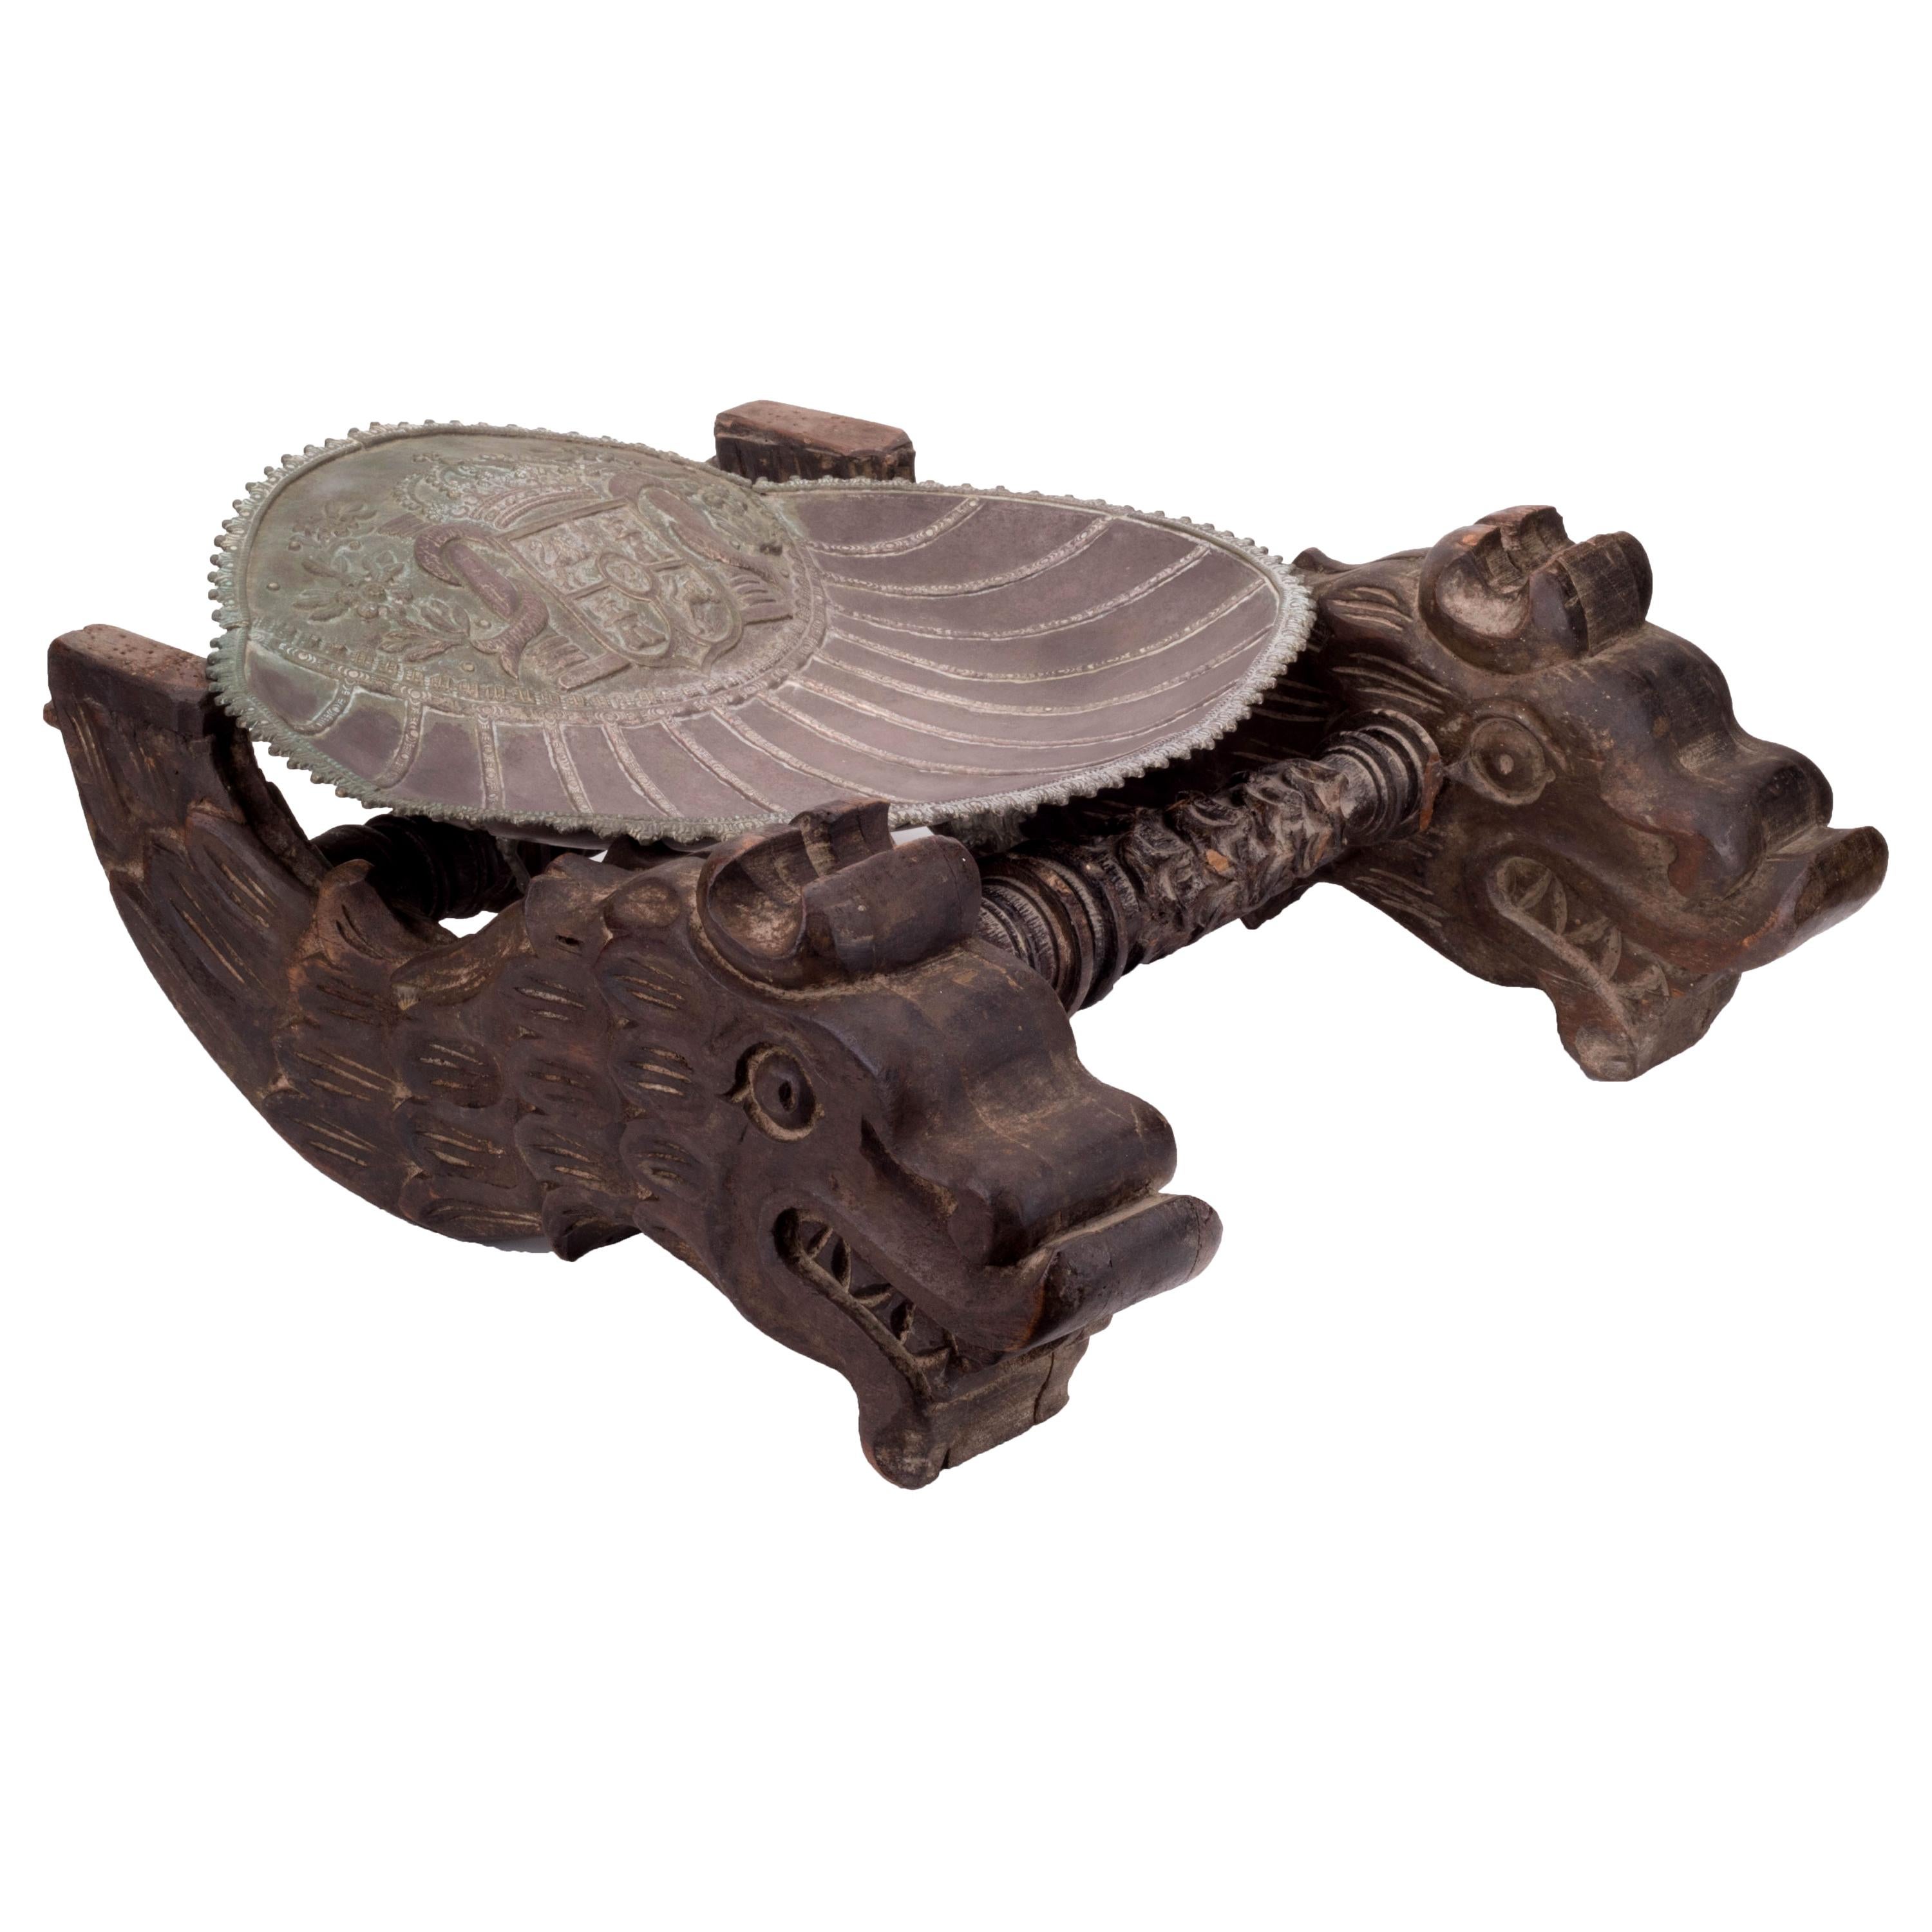 Conch en argent avec les armoiries en fonte et cuir de León sur un support en bois sculpté